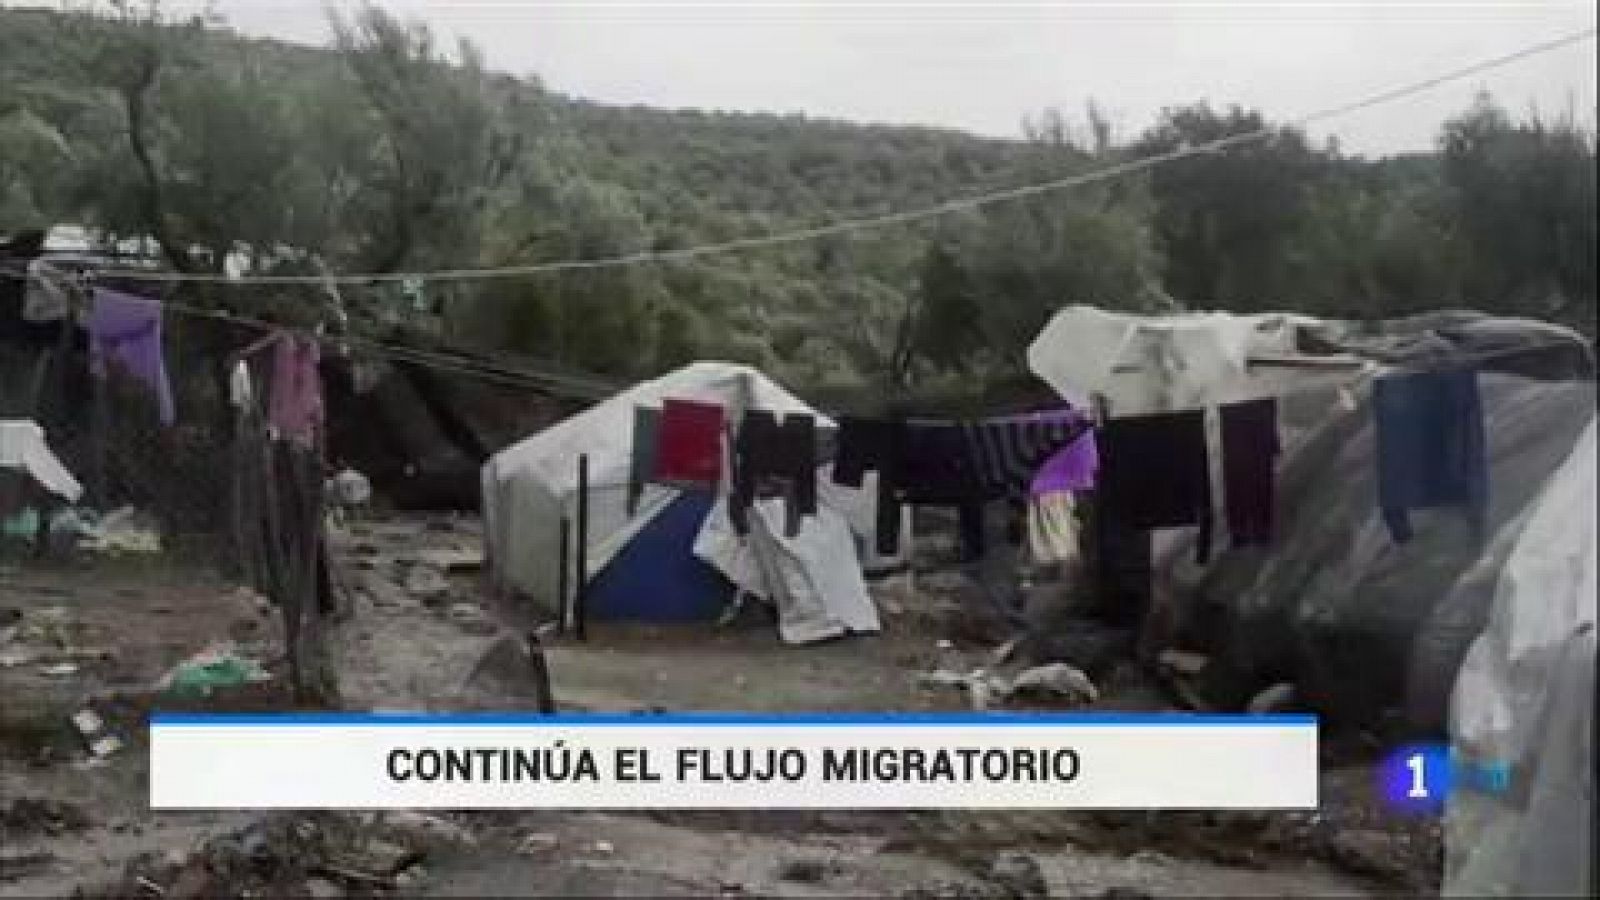 Crisis de los refugiados: Más de 15.000 refugiados siguen esperando la entrada a Europa en Grecia - RTVE.es